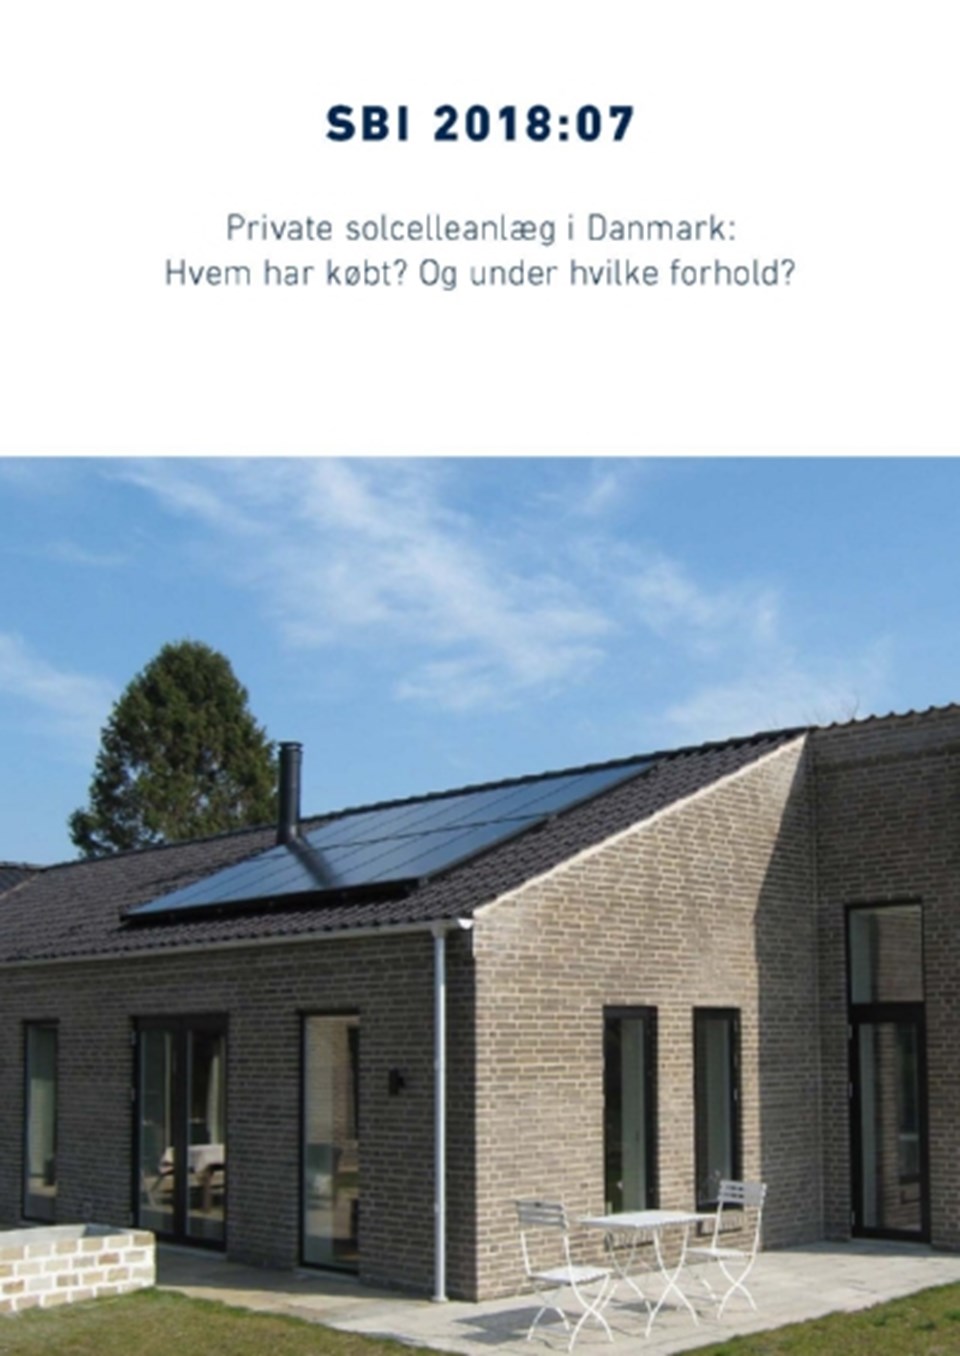 Private solcelleanlæg i Danmark?